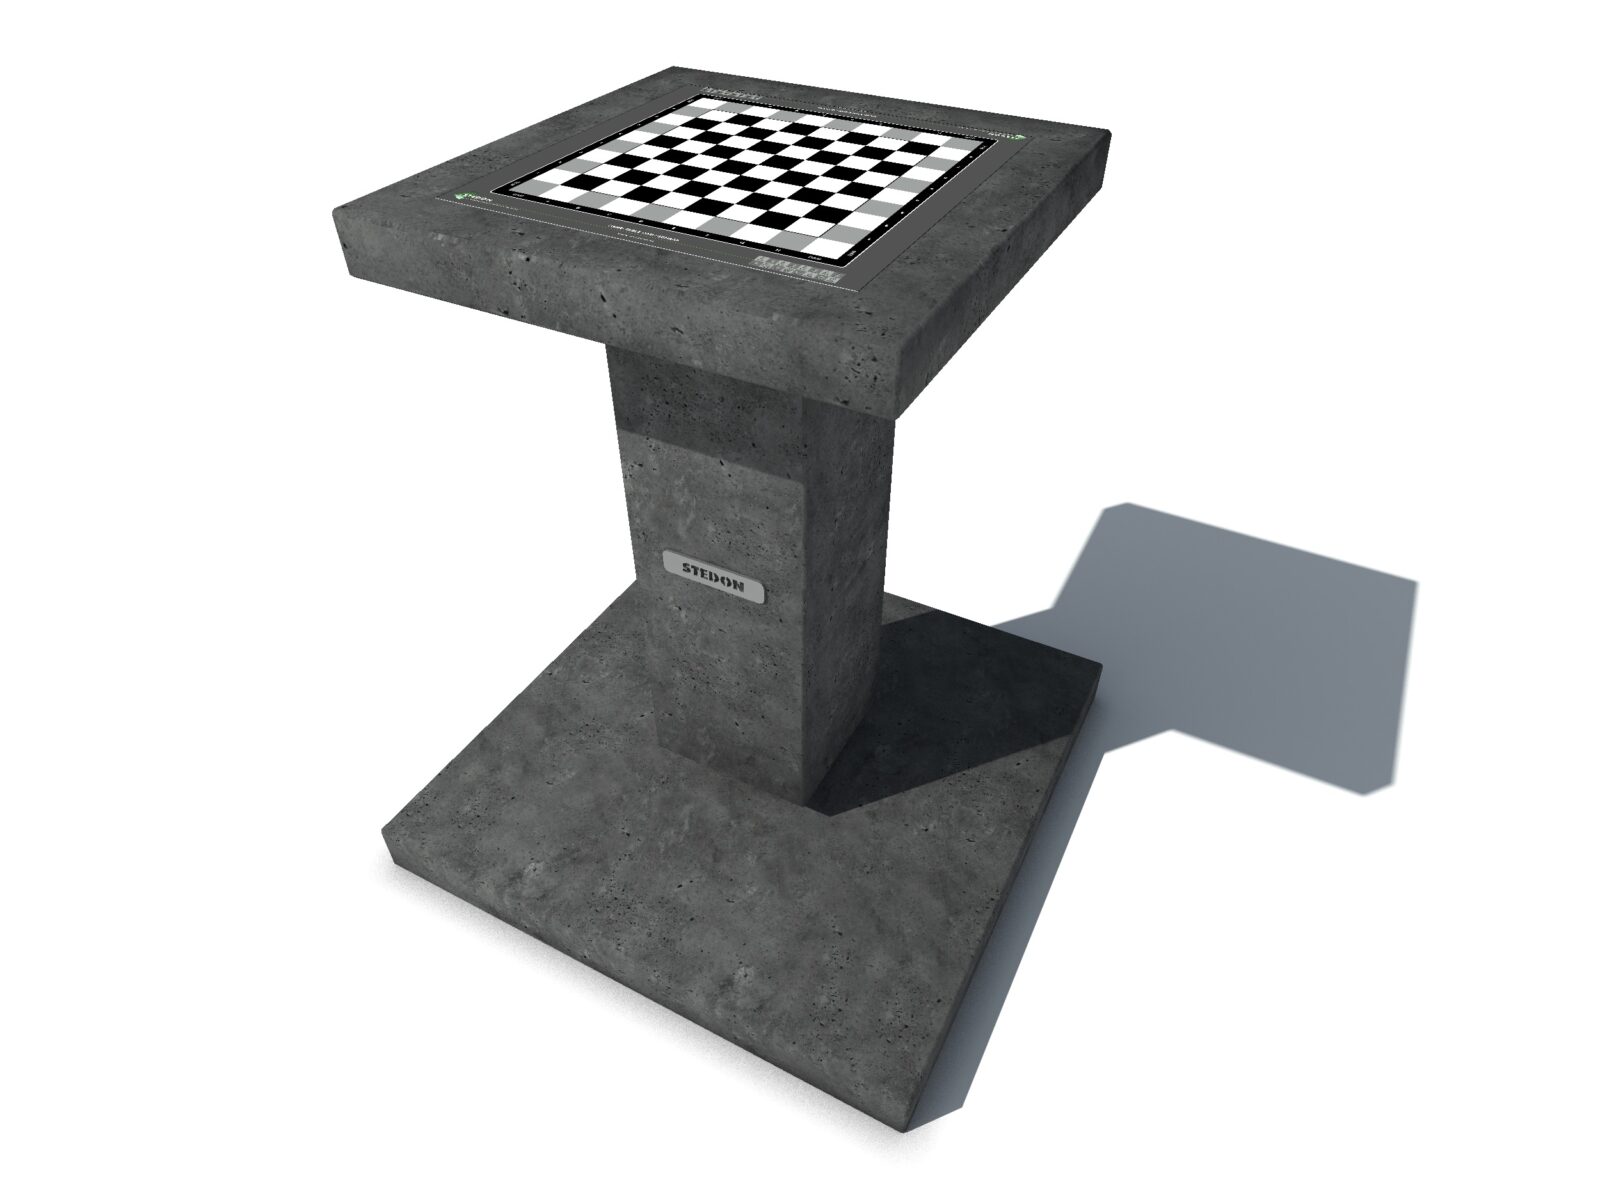 Dam schaak tafel, dam tafel, schaak tafel, game table, picknicktafel beton,